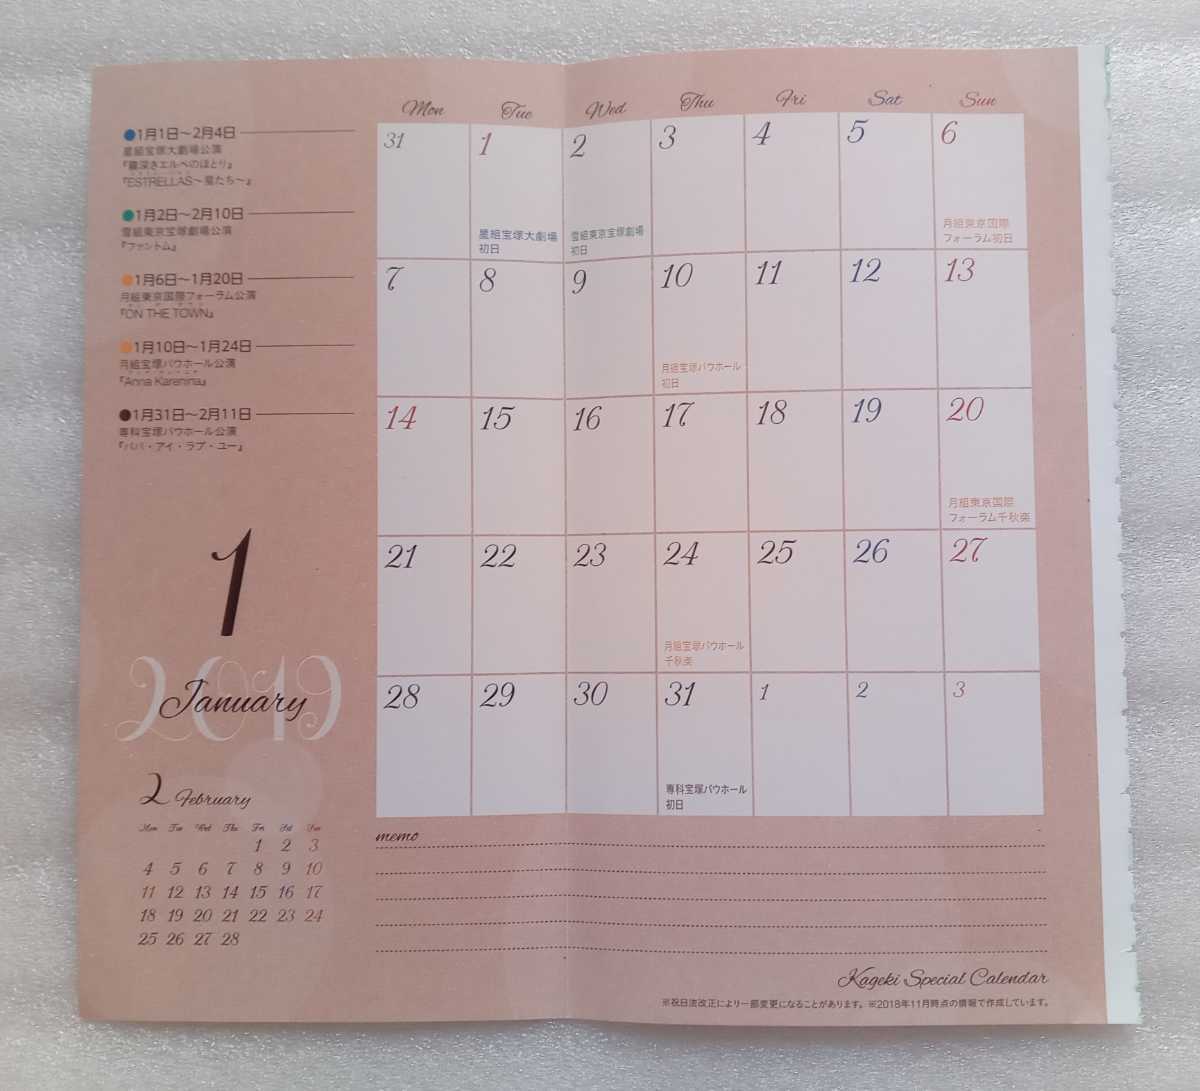 歌劇 とじ込みカレンダー 平成23から29年までの表紙掲載 2018年12月号のとじ込みカレンダー※とじ込みカレンダーのみ